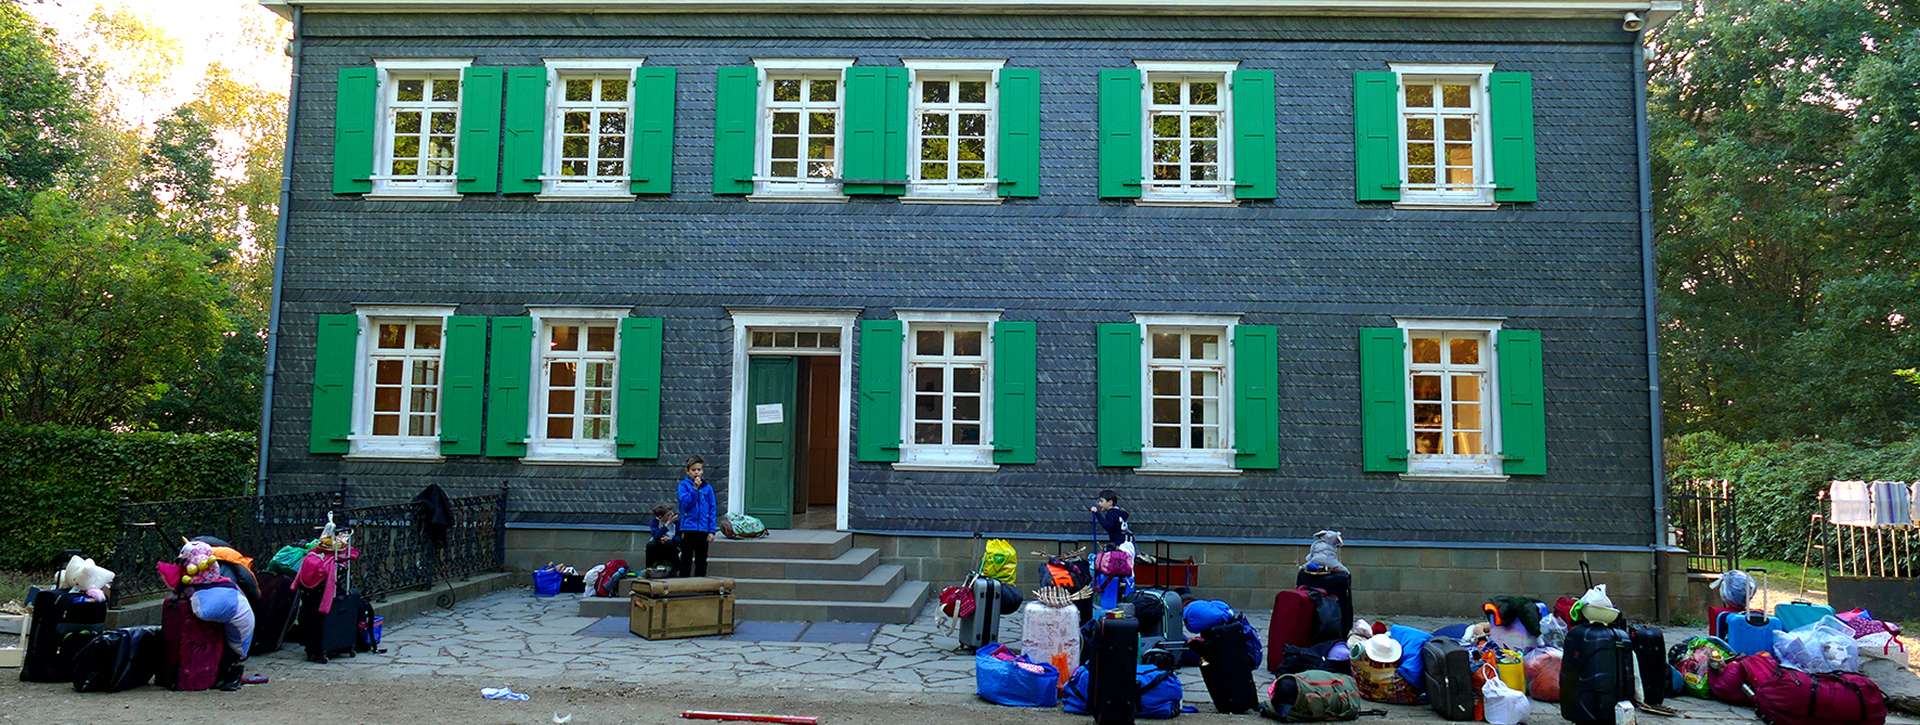 Graues Haus mit grünen Fensterläden, davor Kinder mit Rucksäcken